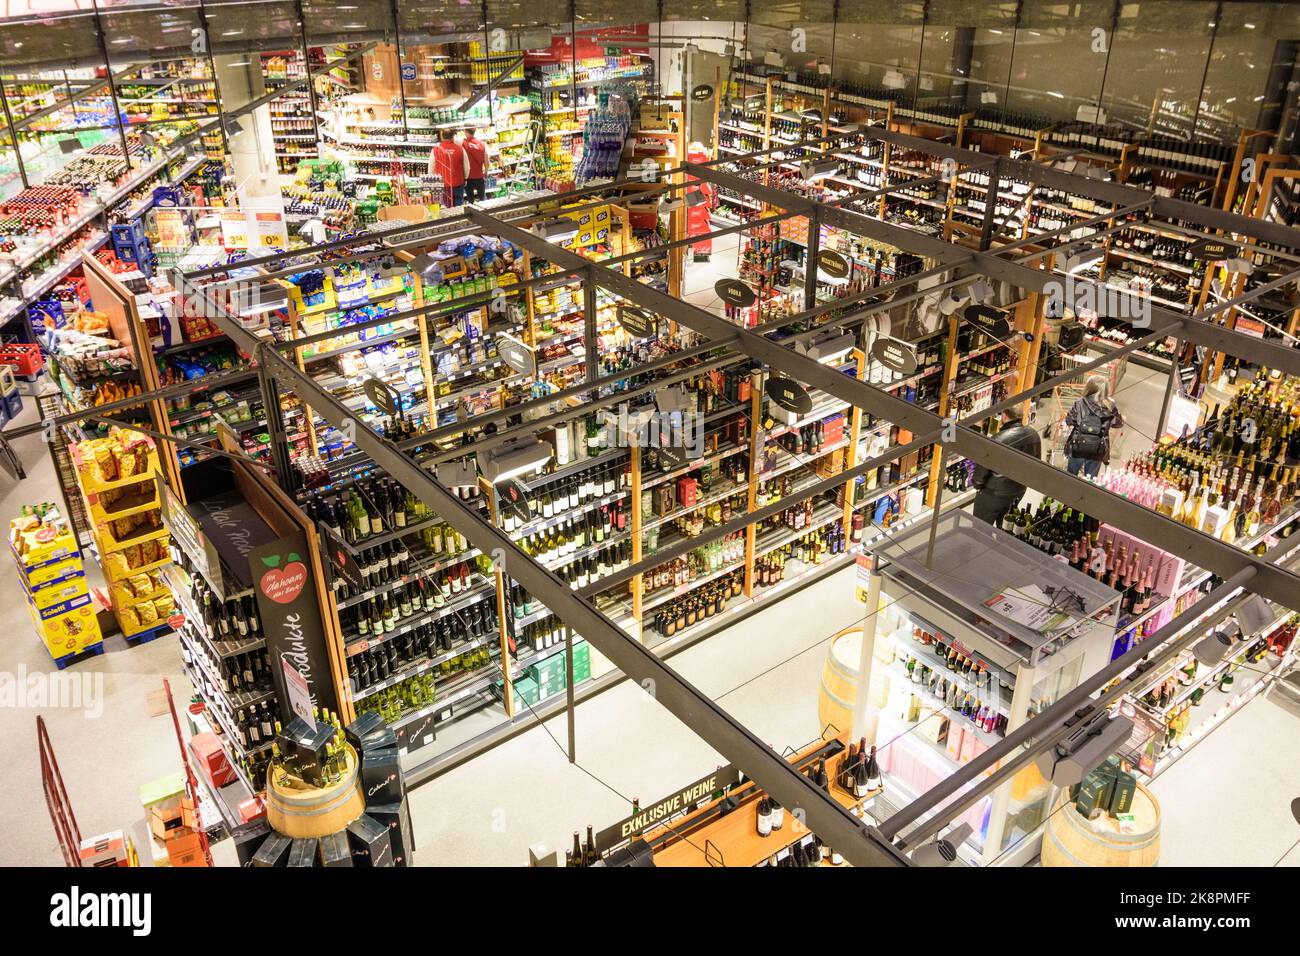 Wien, Vienne : supermarché Interspar hypermarché, magasin de restauration, dans le centre commercial du 19 e trimestre. Döbling, Wien, Autriche Banque D'Images